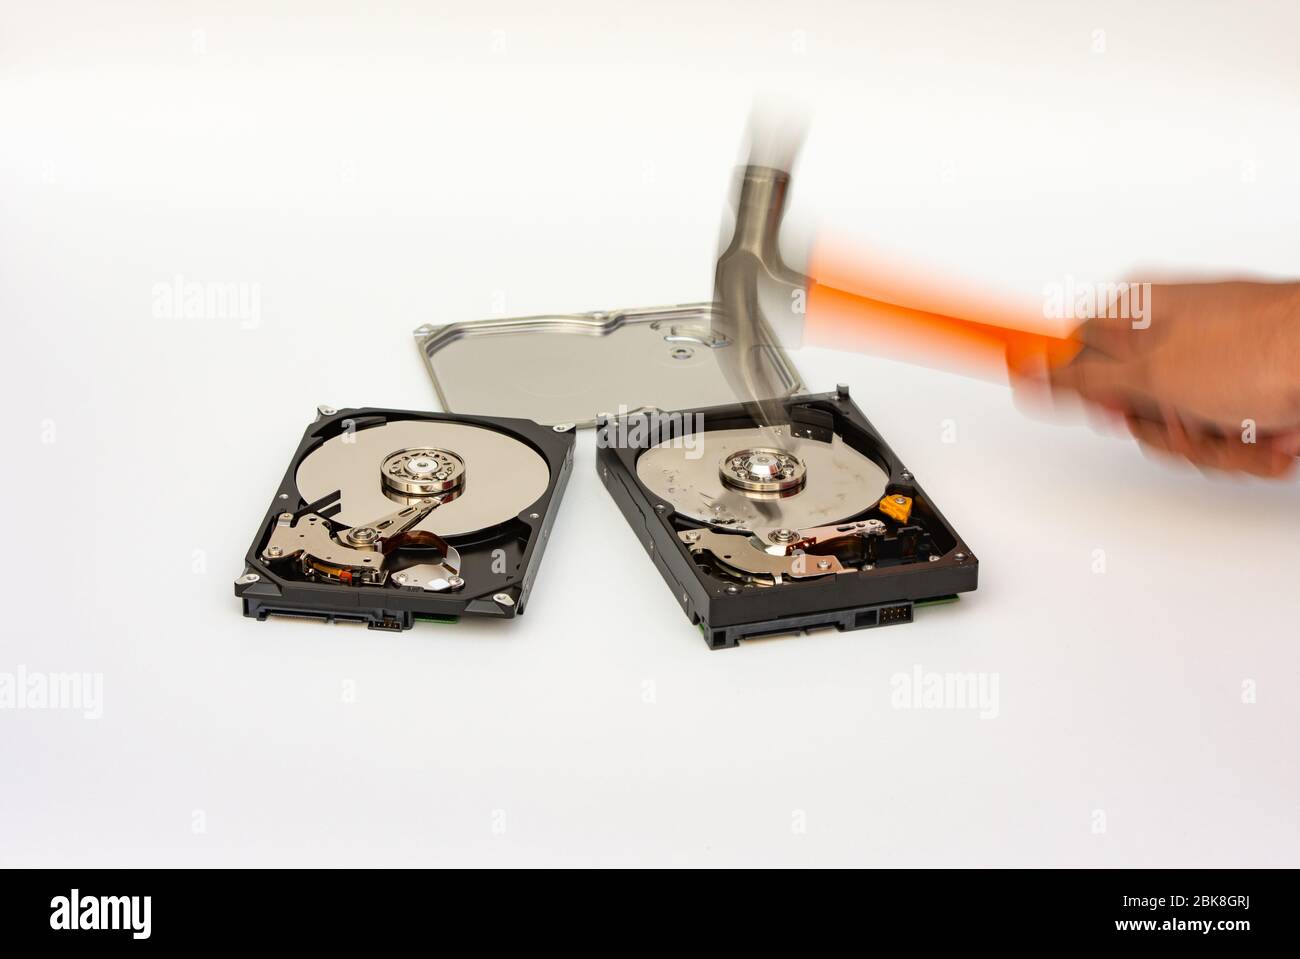 Détruisez le disque dur avec un marteau, un concept de sécurité, un effet flou de mouvement. Banque D'Images